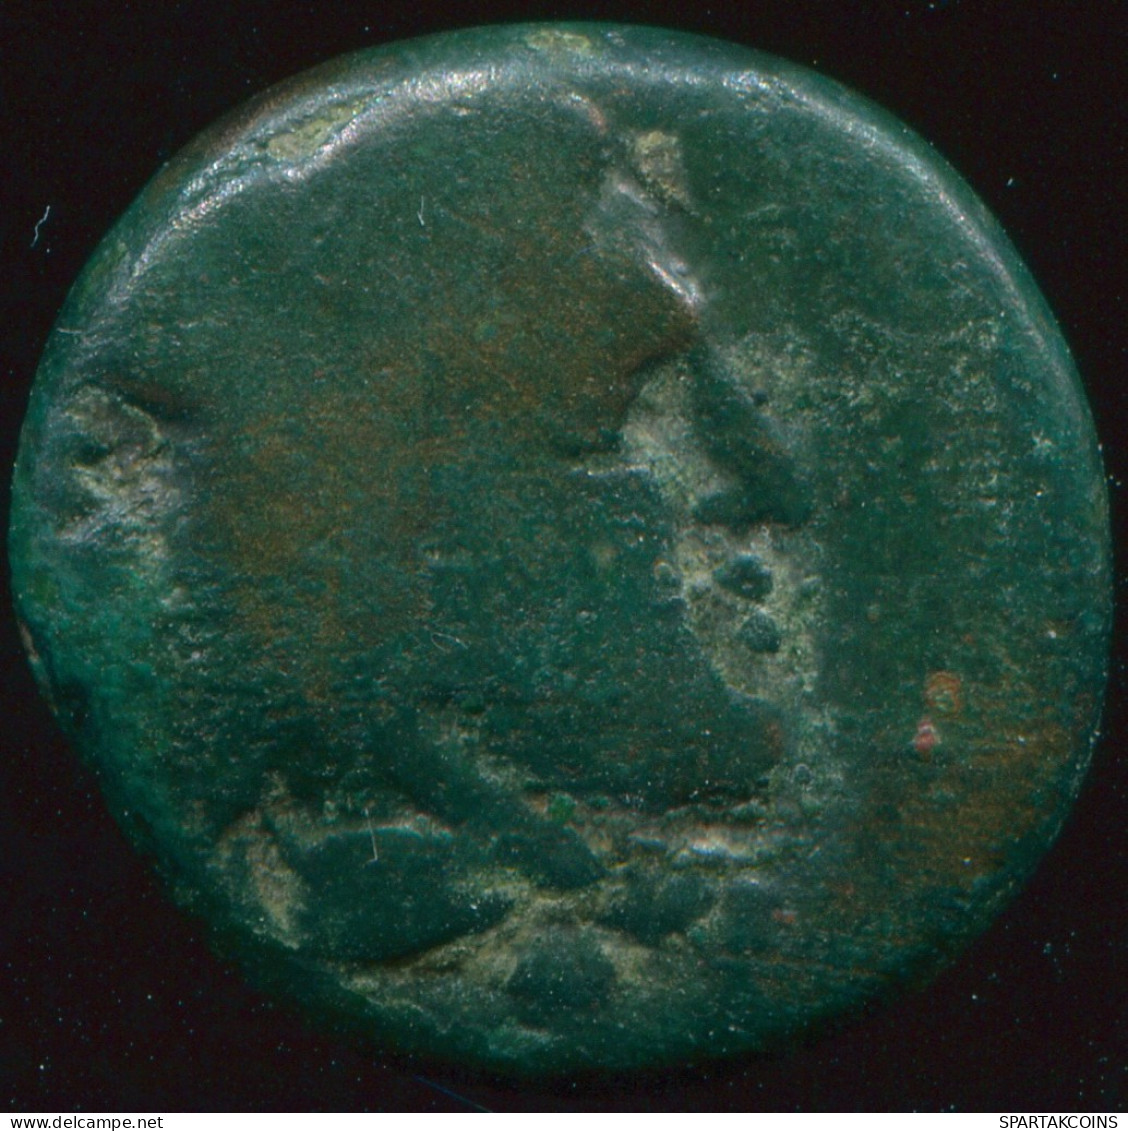 Antiguo GRIEGO ANTIGUO Moneda 3.2g/15.58mm #GRK1412.10.E.A - Greek